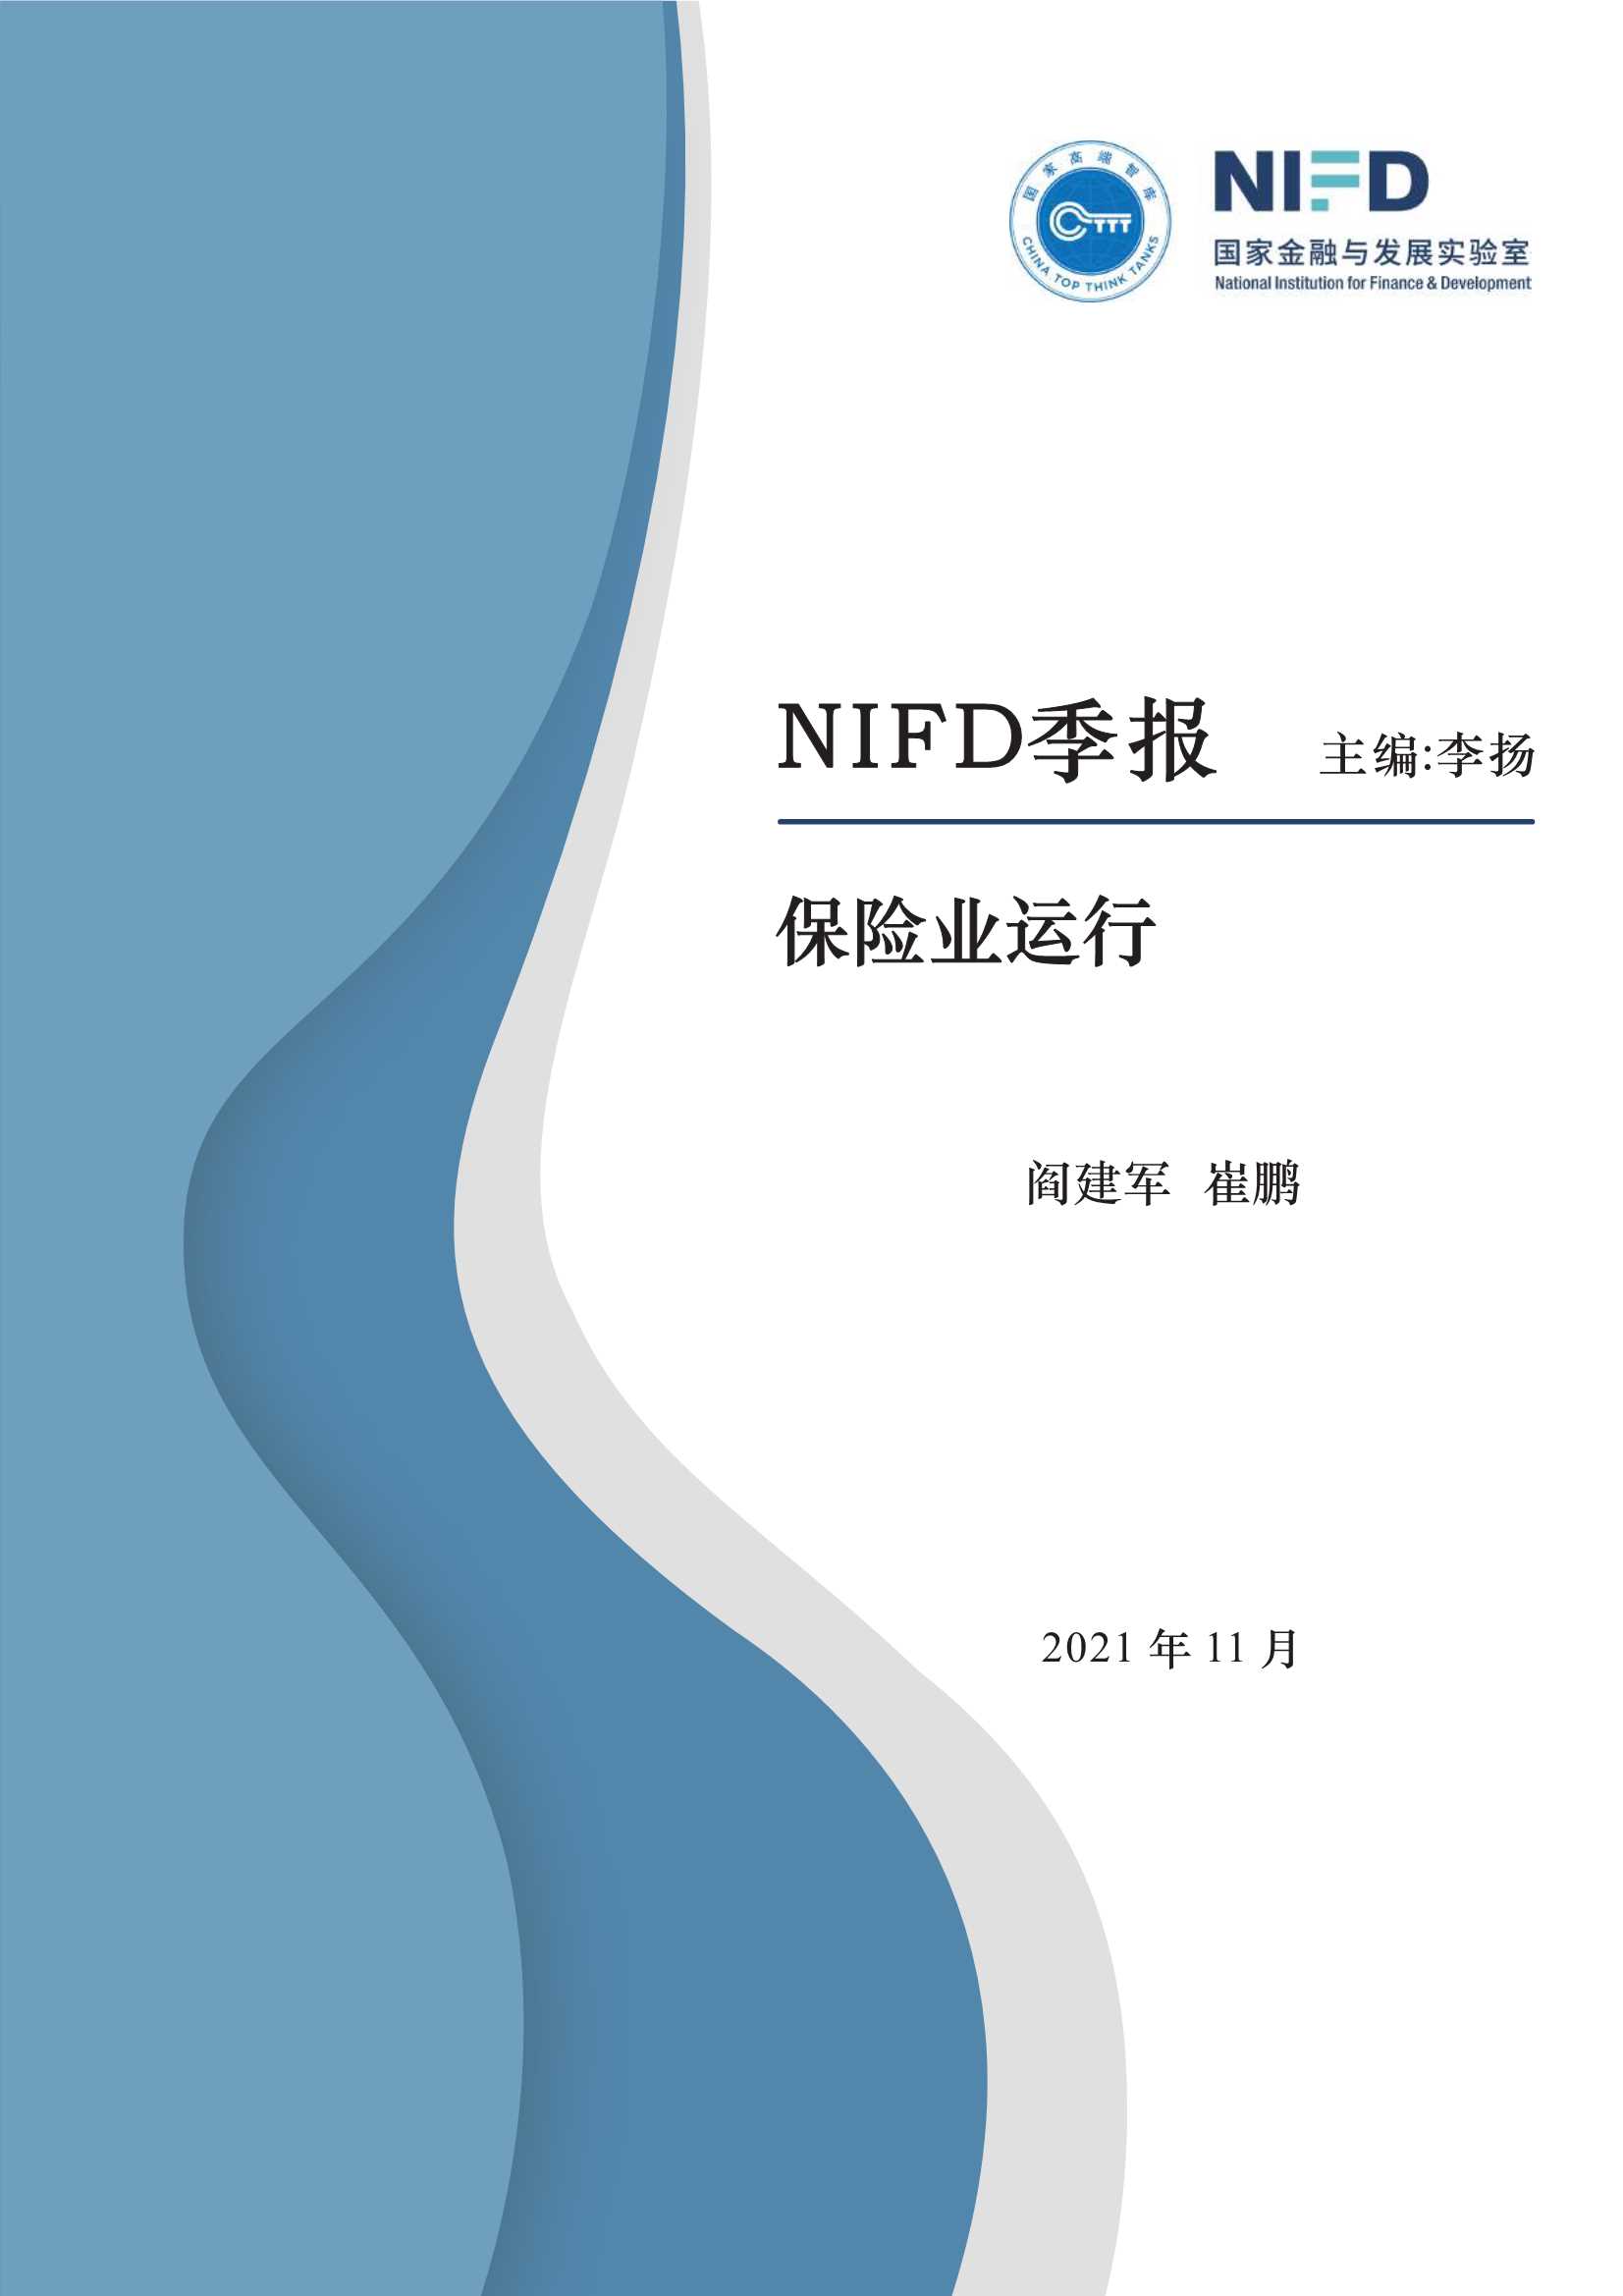 NIFD-2021Q3保险业运行-2021.11-13页